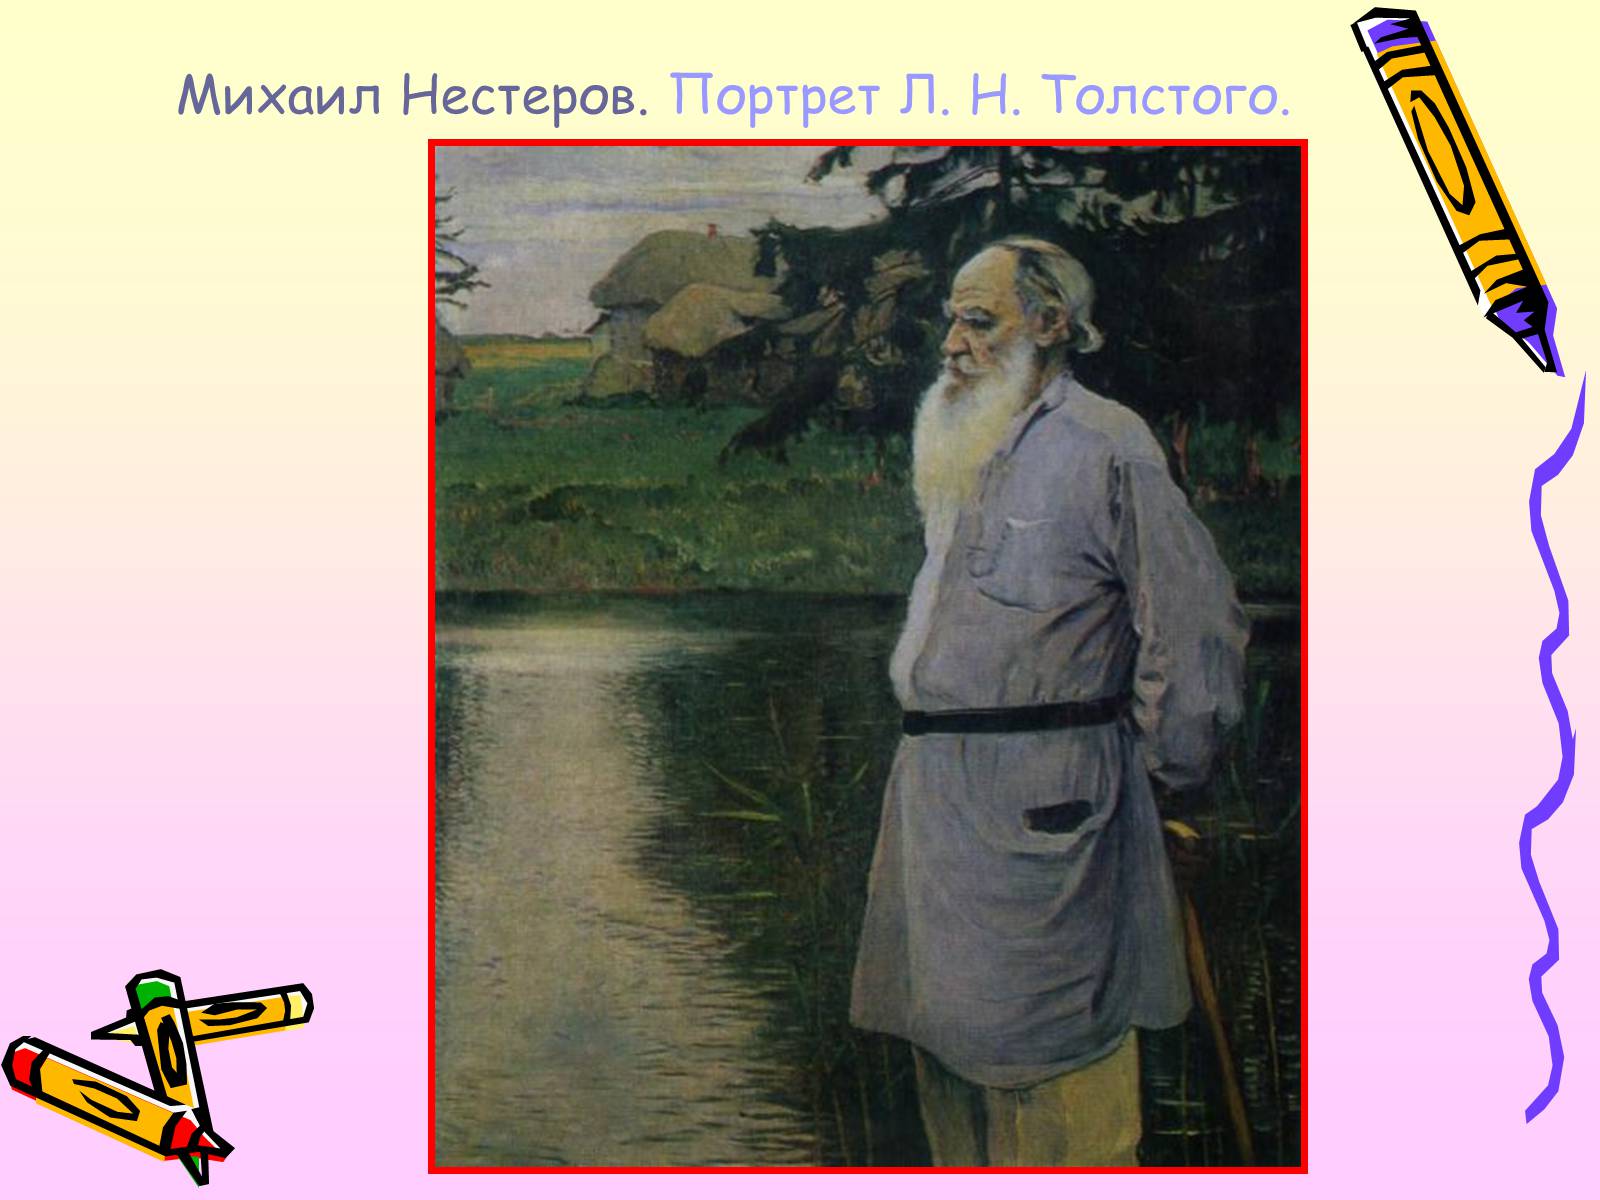 Нестеров портрет Льва Толстого